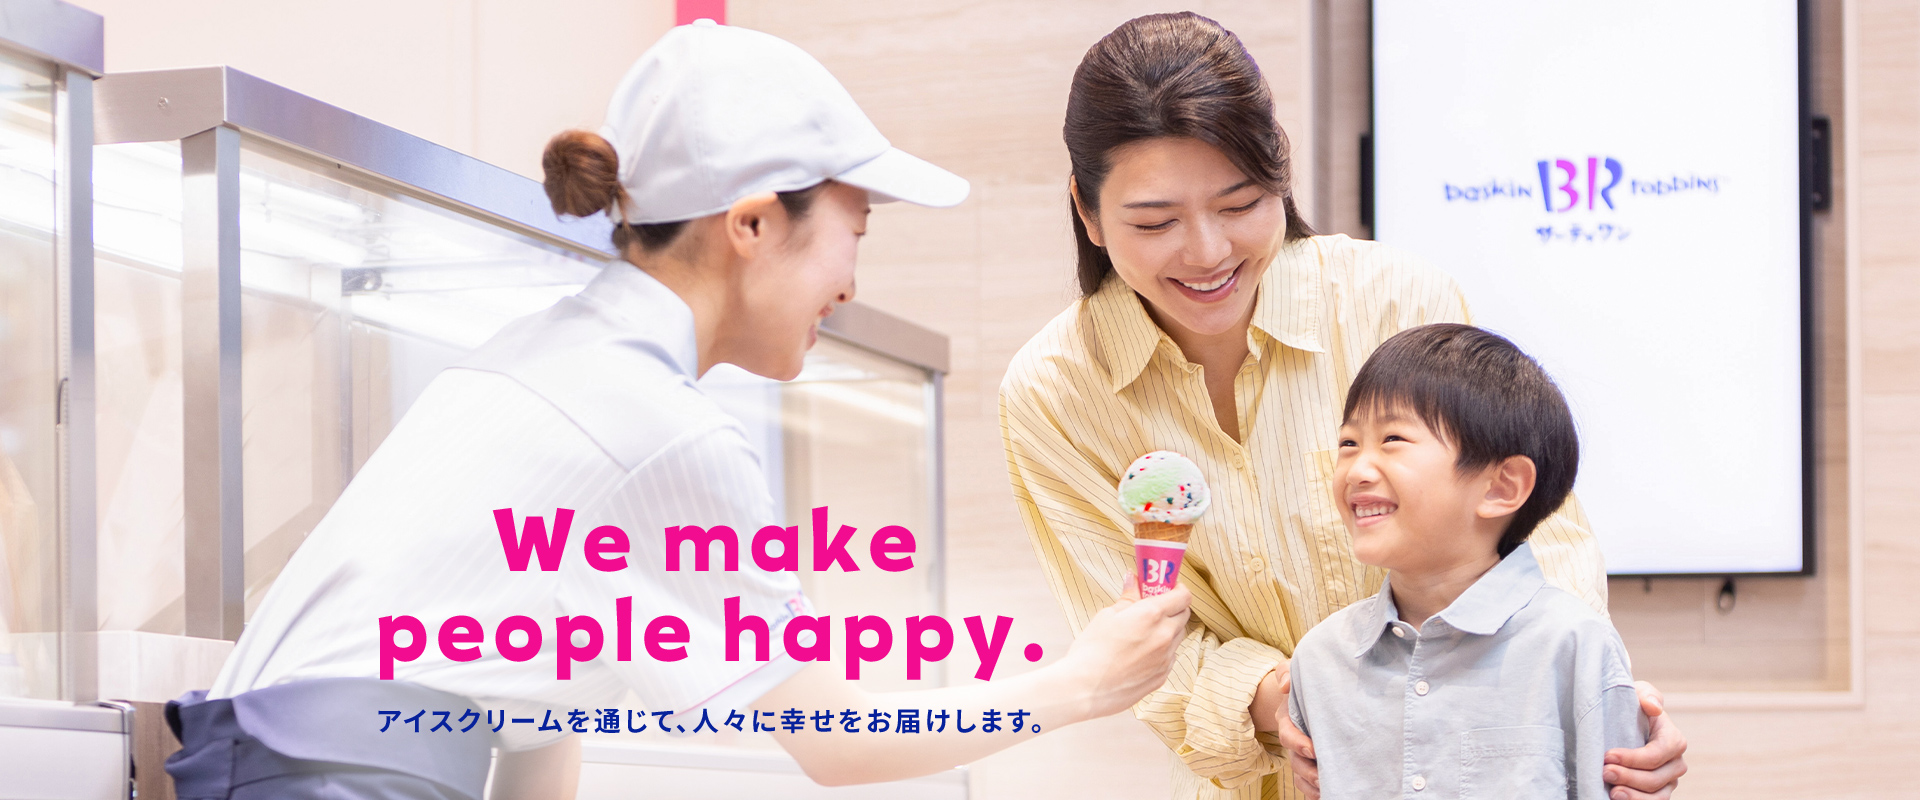 We make people happy. 「アイスクリームを通じて、お客様に幸せをお届けします。」